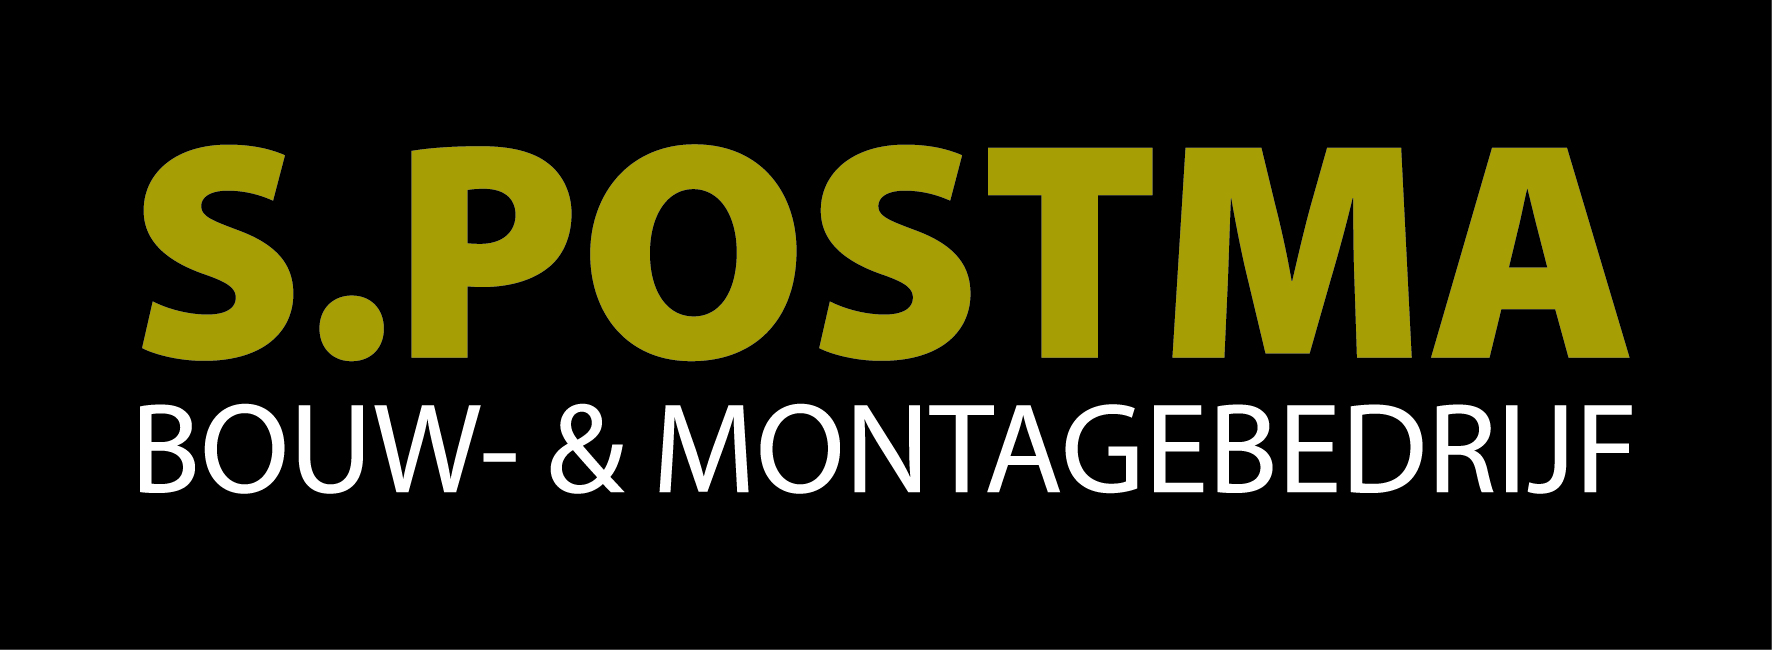 S. Postma Bouw- & Montagebedrijf logo